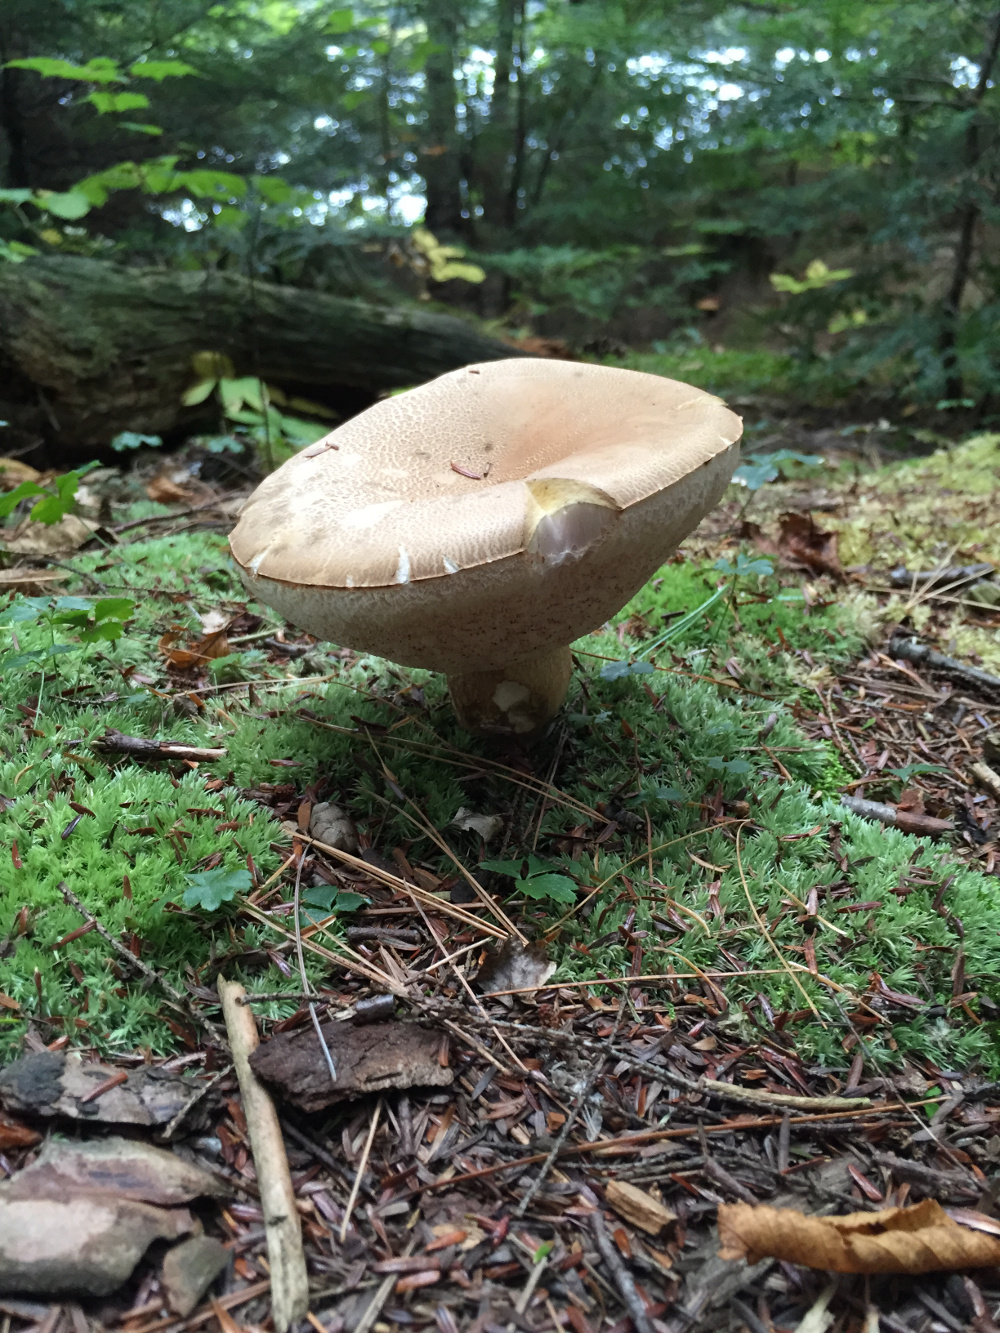 Monster mushroom